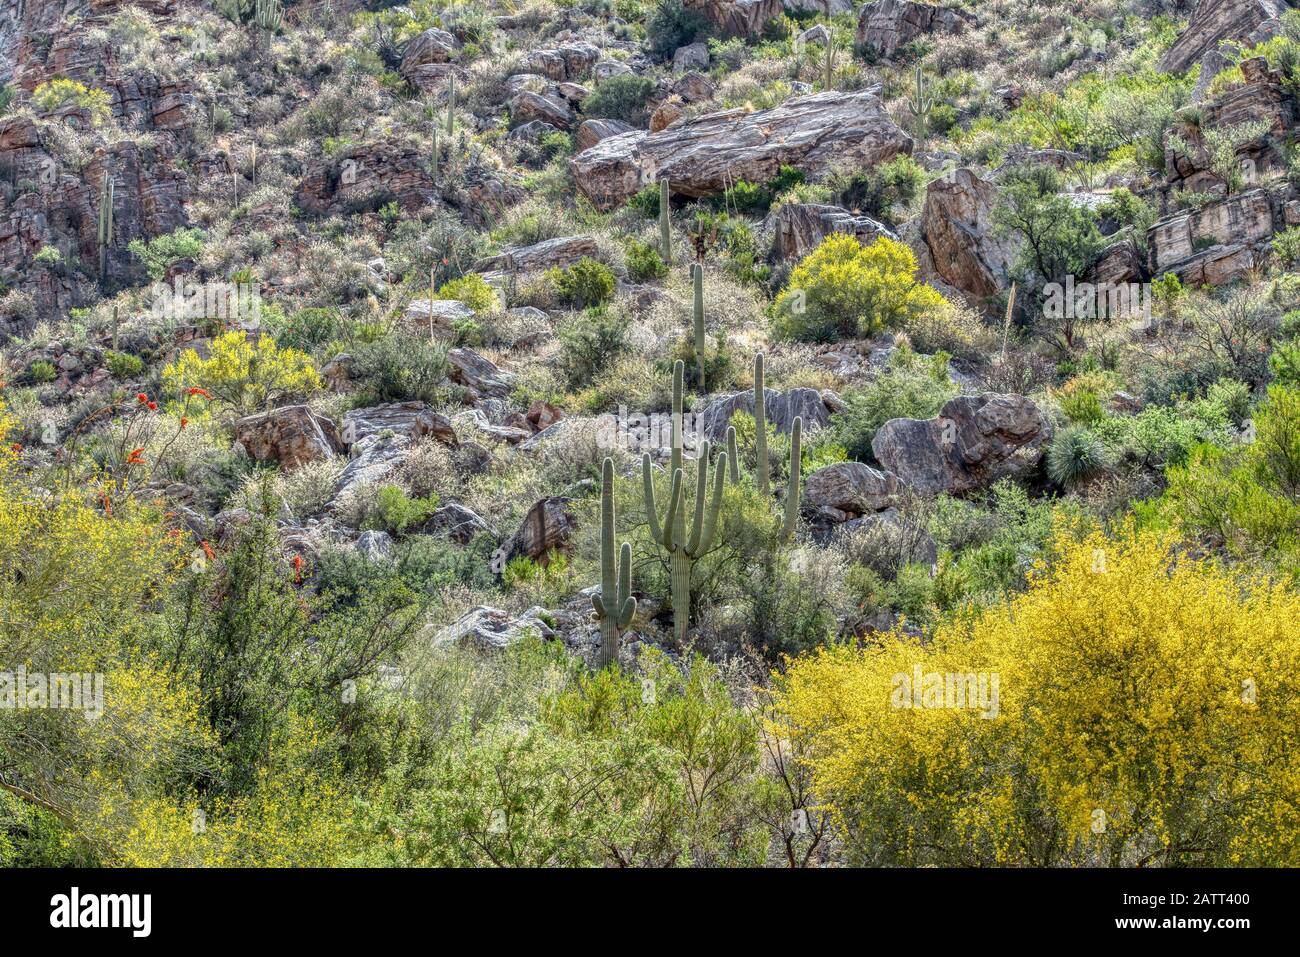 Vous trouverez des montagnes en hauteur, des canyons profonds et les plantes et animaux uniques du désert de Sonaran dans la zone de loisirs du canyon Sabino. Banque D'Images